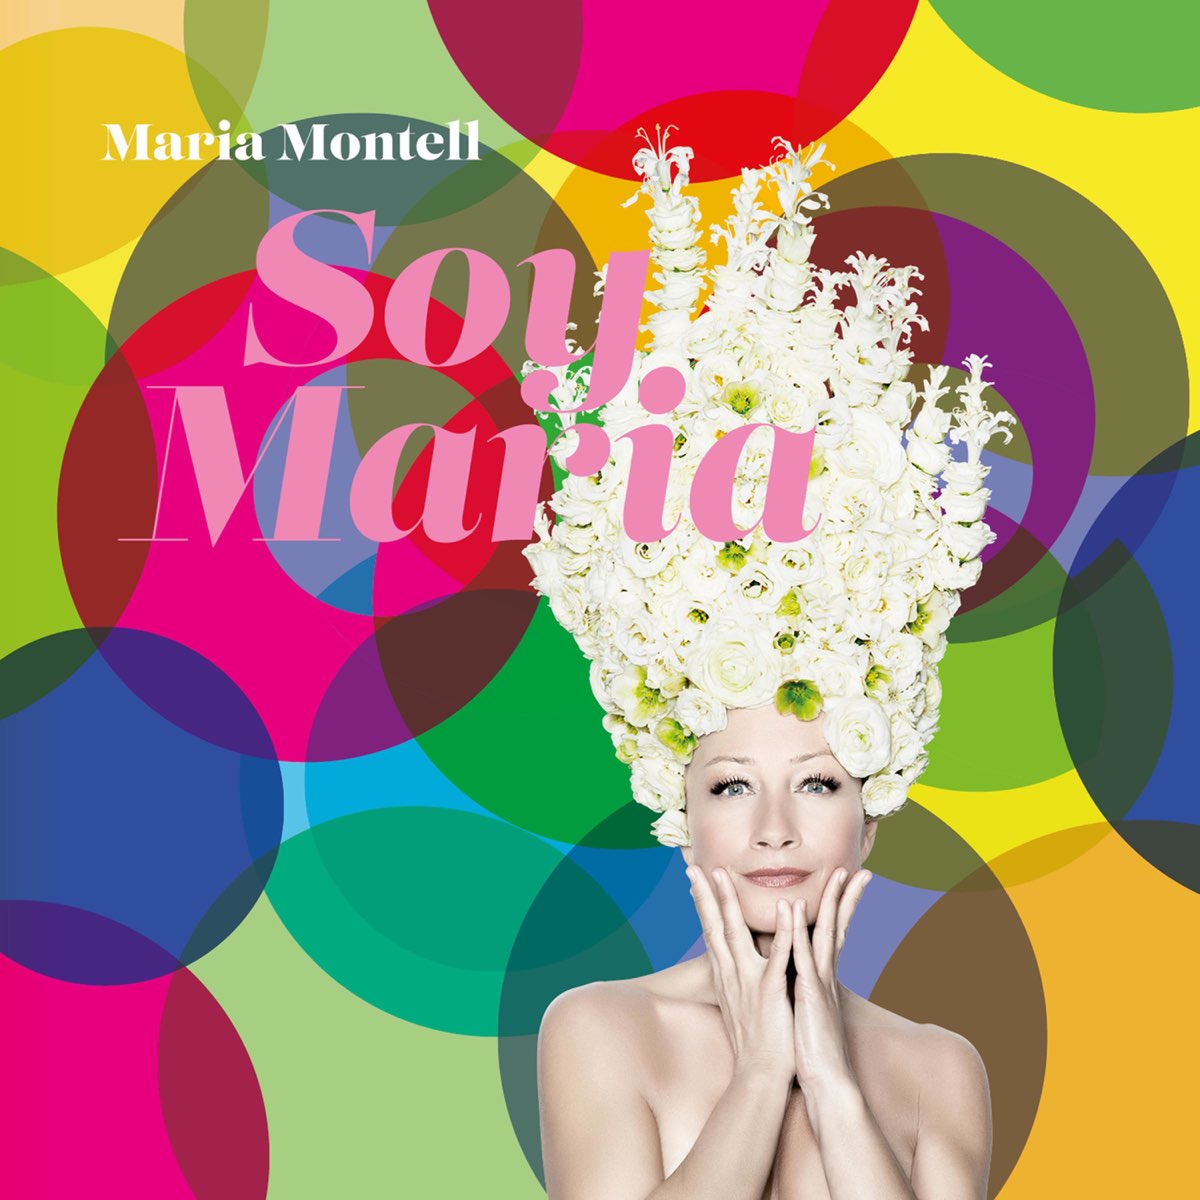 Candy maria. Maria Montell. Soy Maria. Maria Soya. Песня Maria Maria на испанском.